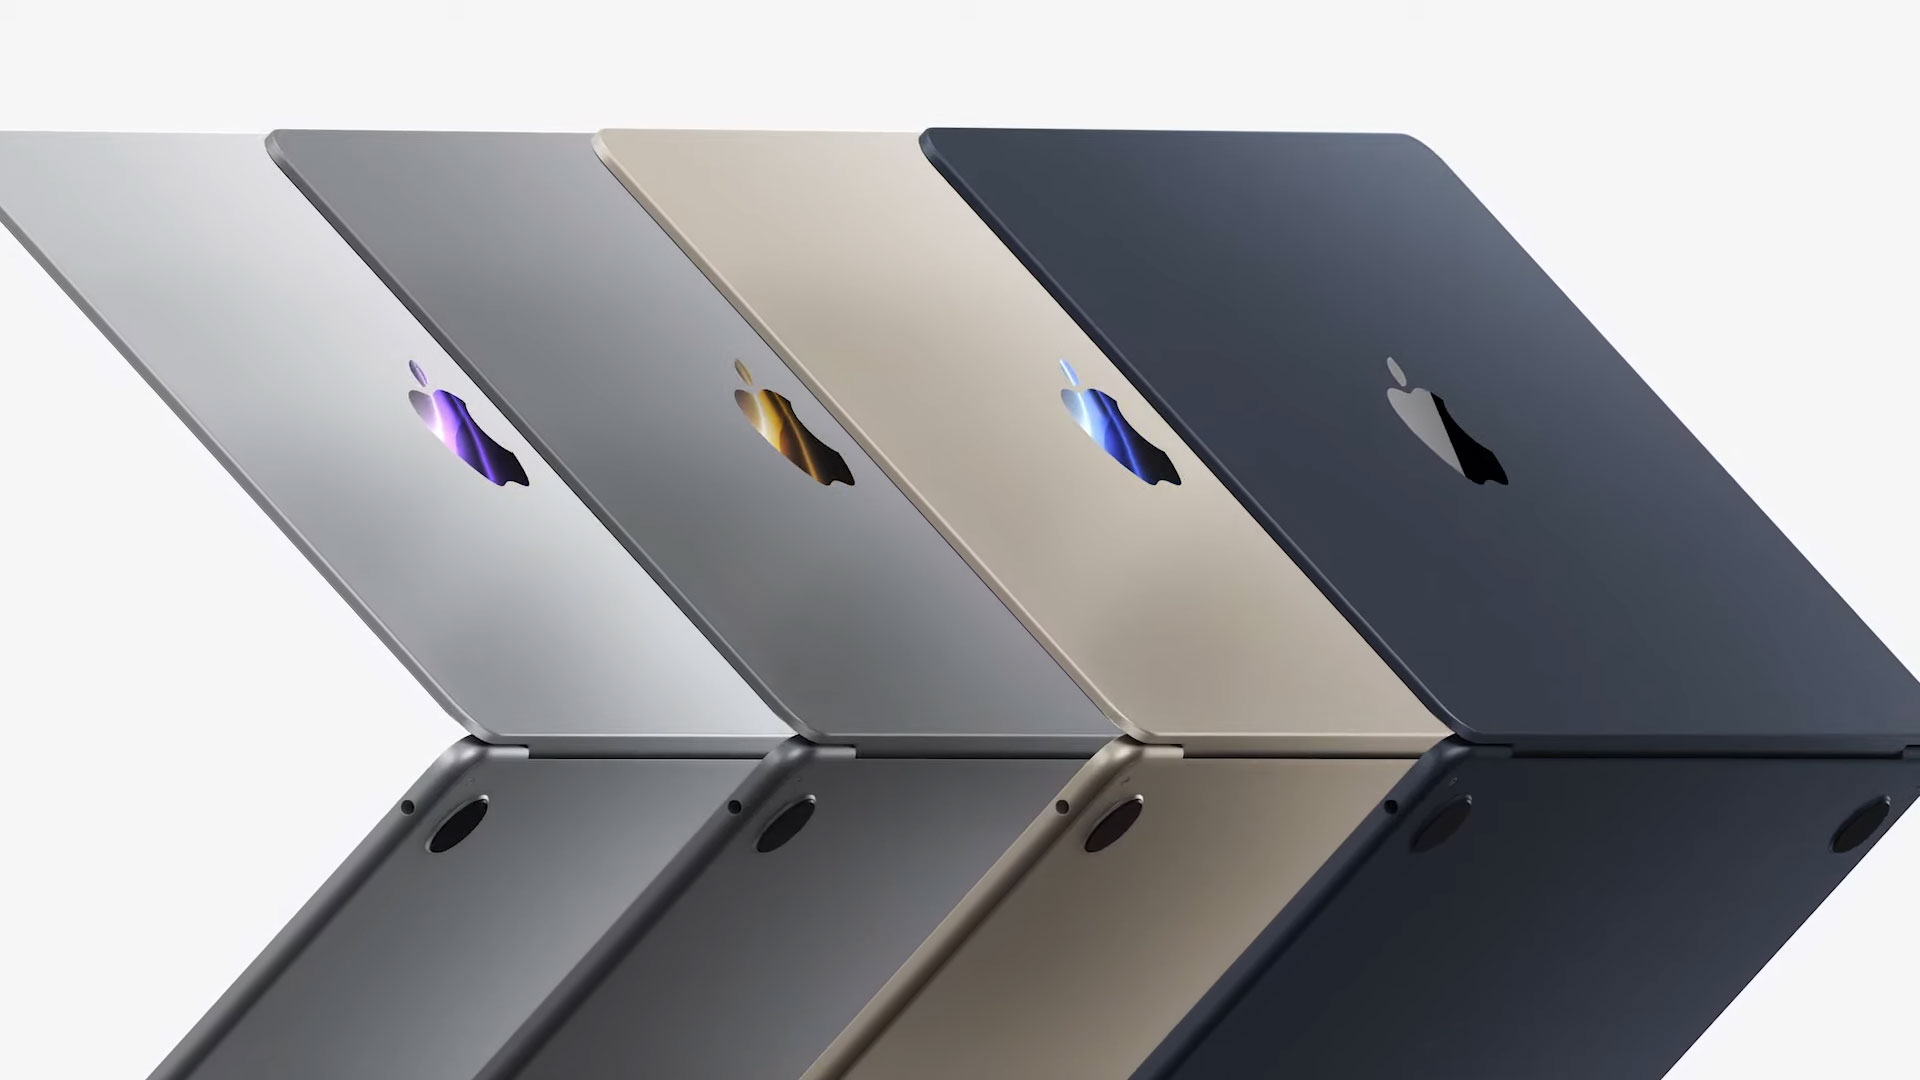 Ulaş Utku Bozdoğan: M2 İşlemciili Macbook Pro Ve Macbook Air Tanıtıldı 3